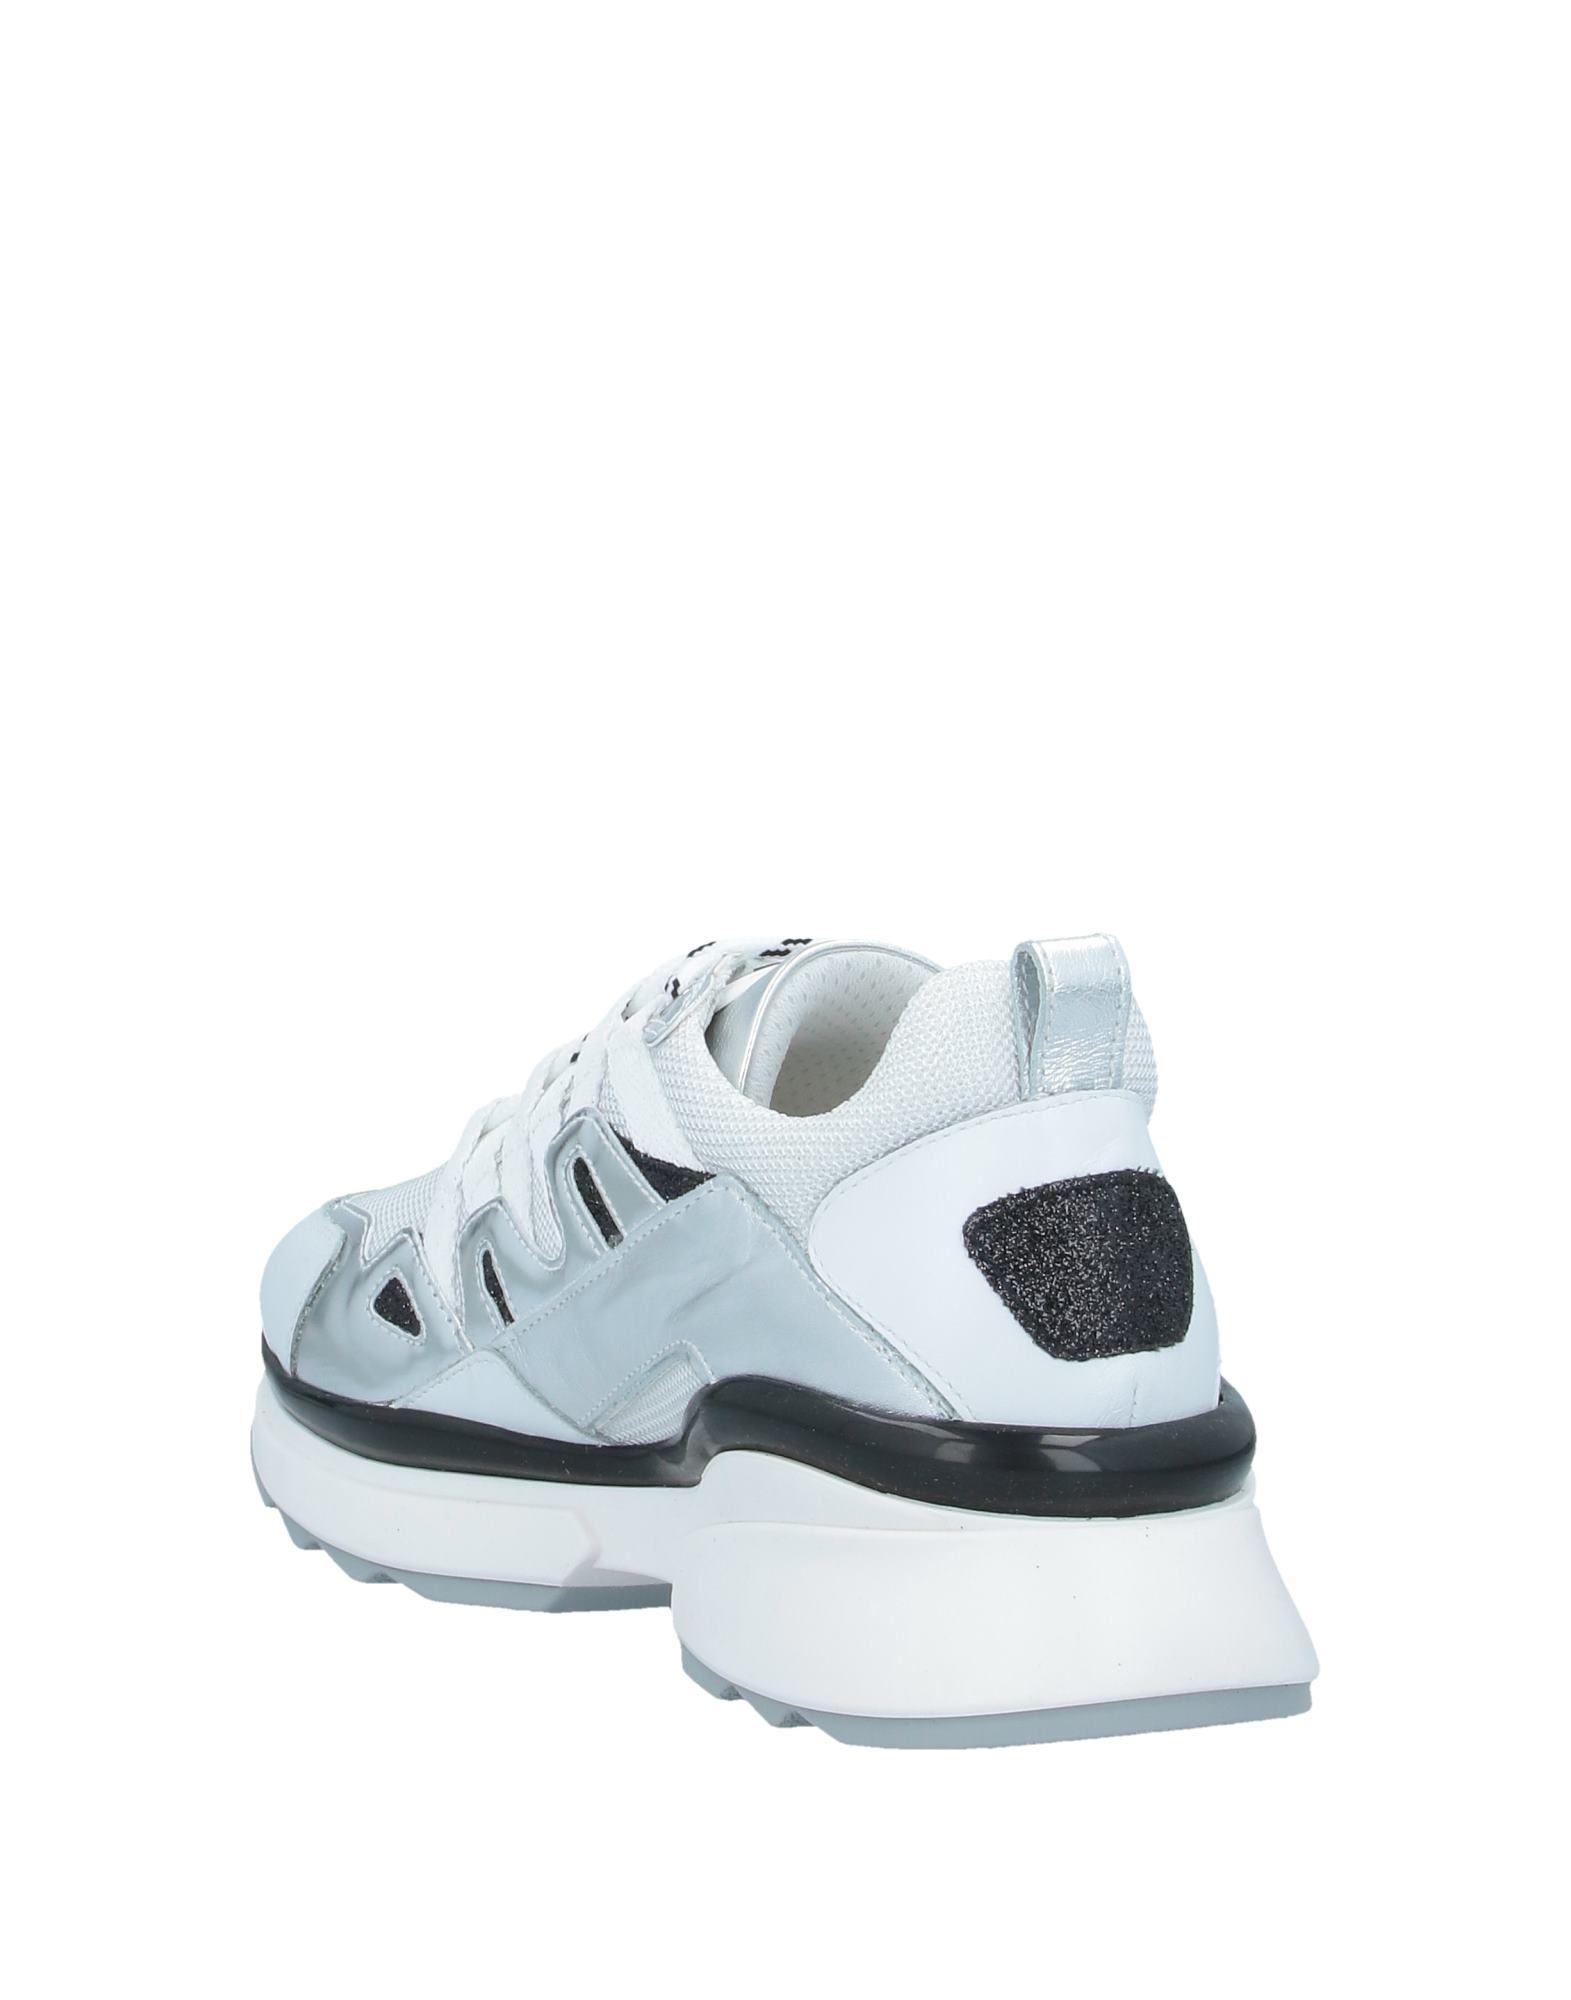 nero giardini white sneakers